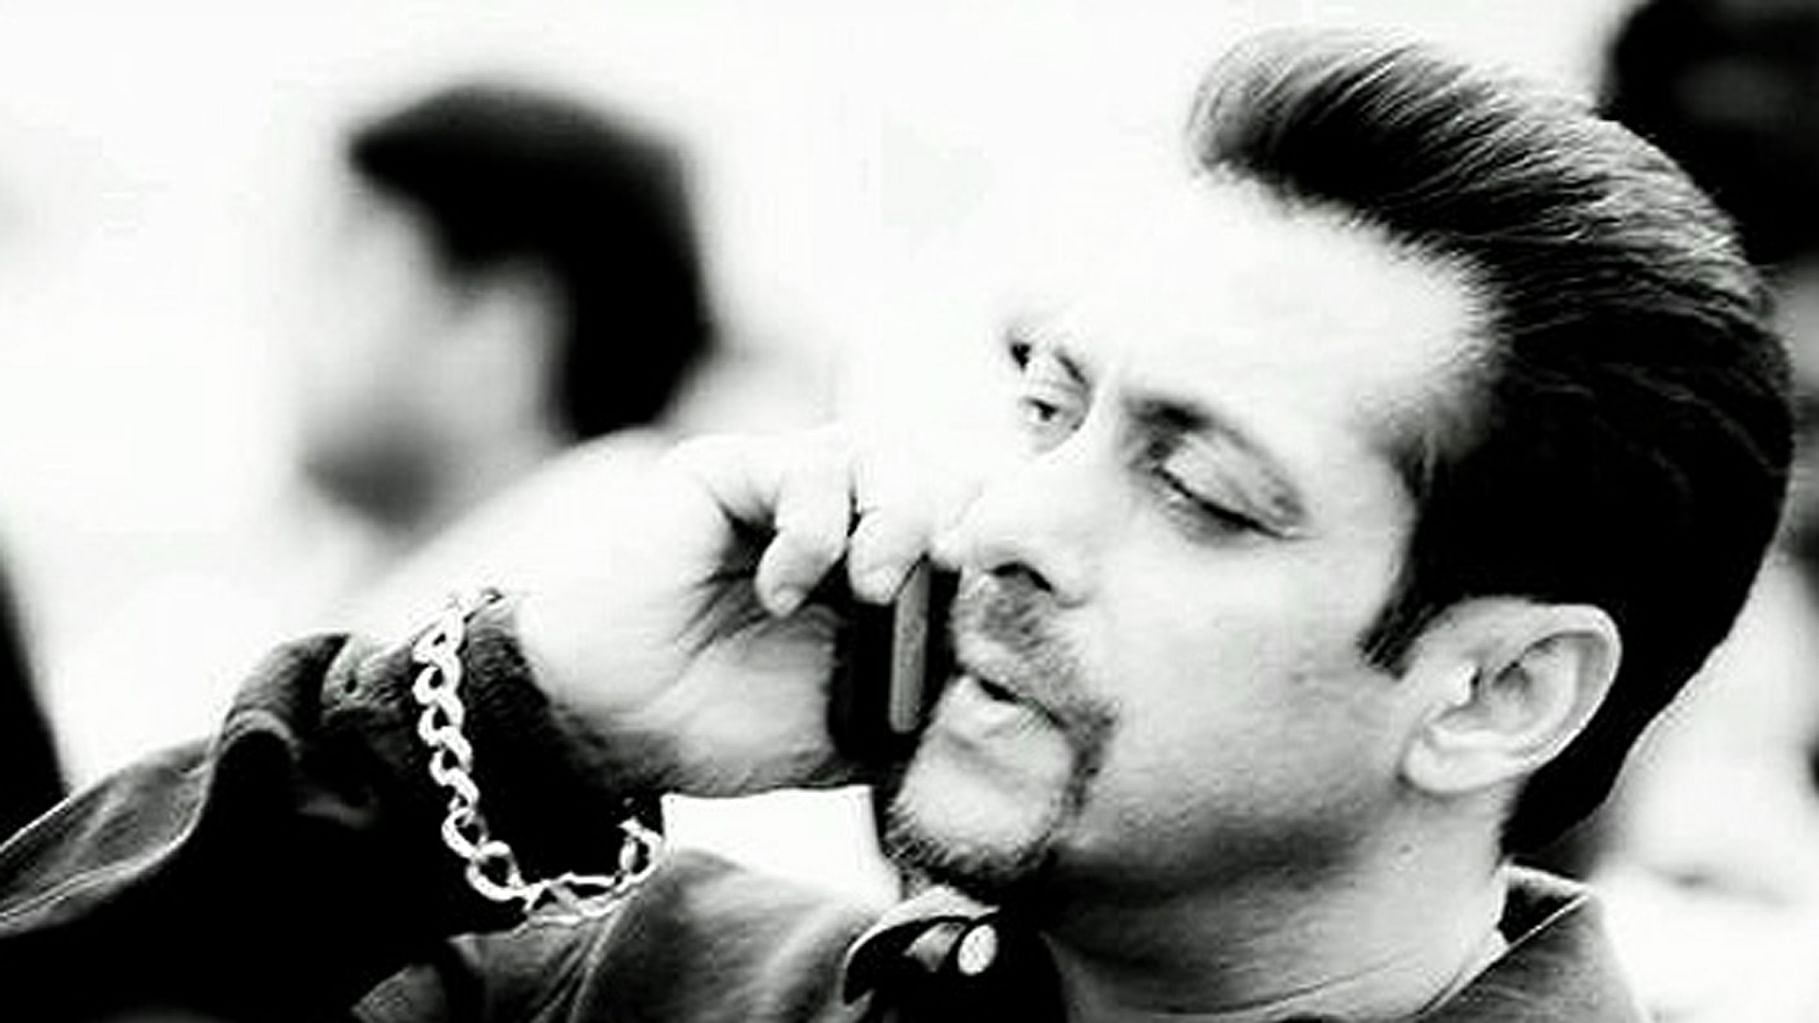 Salman Khan. (Photo: Salman Khan’s Official <a href="https://www.facebook.com/BeingSalmanKhan/photos/a.334875709933972.82021.334873533267523/595134580574749/?type=3&amp;theater">Facebook</a> page)